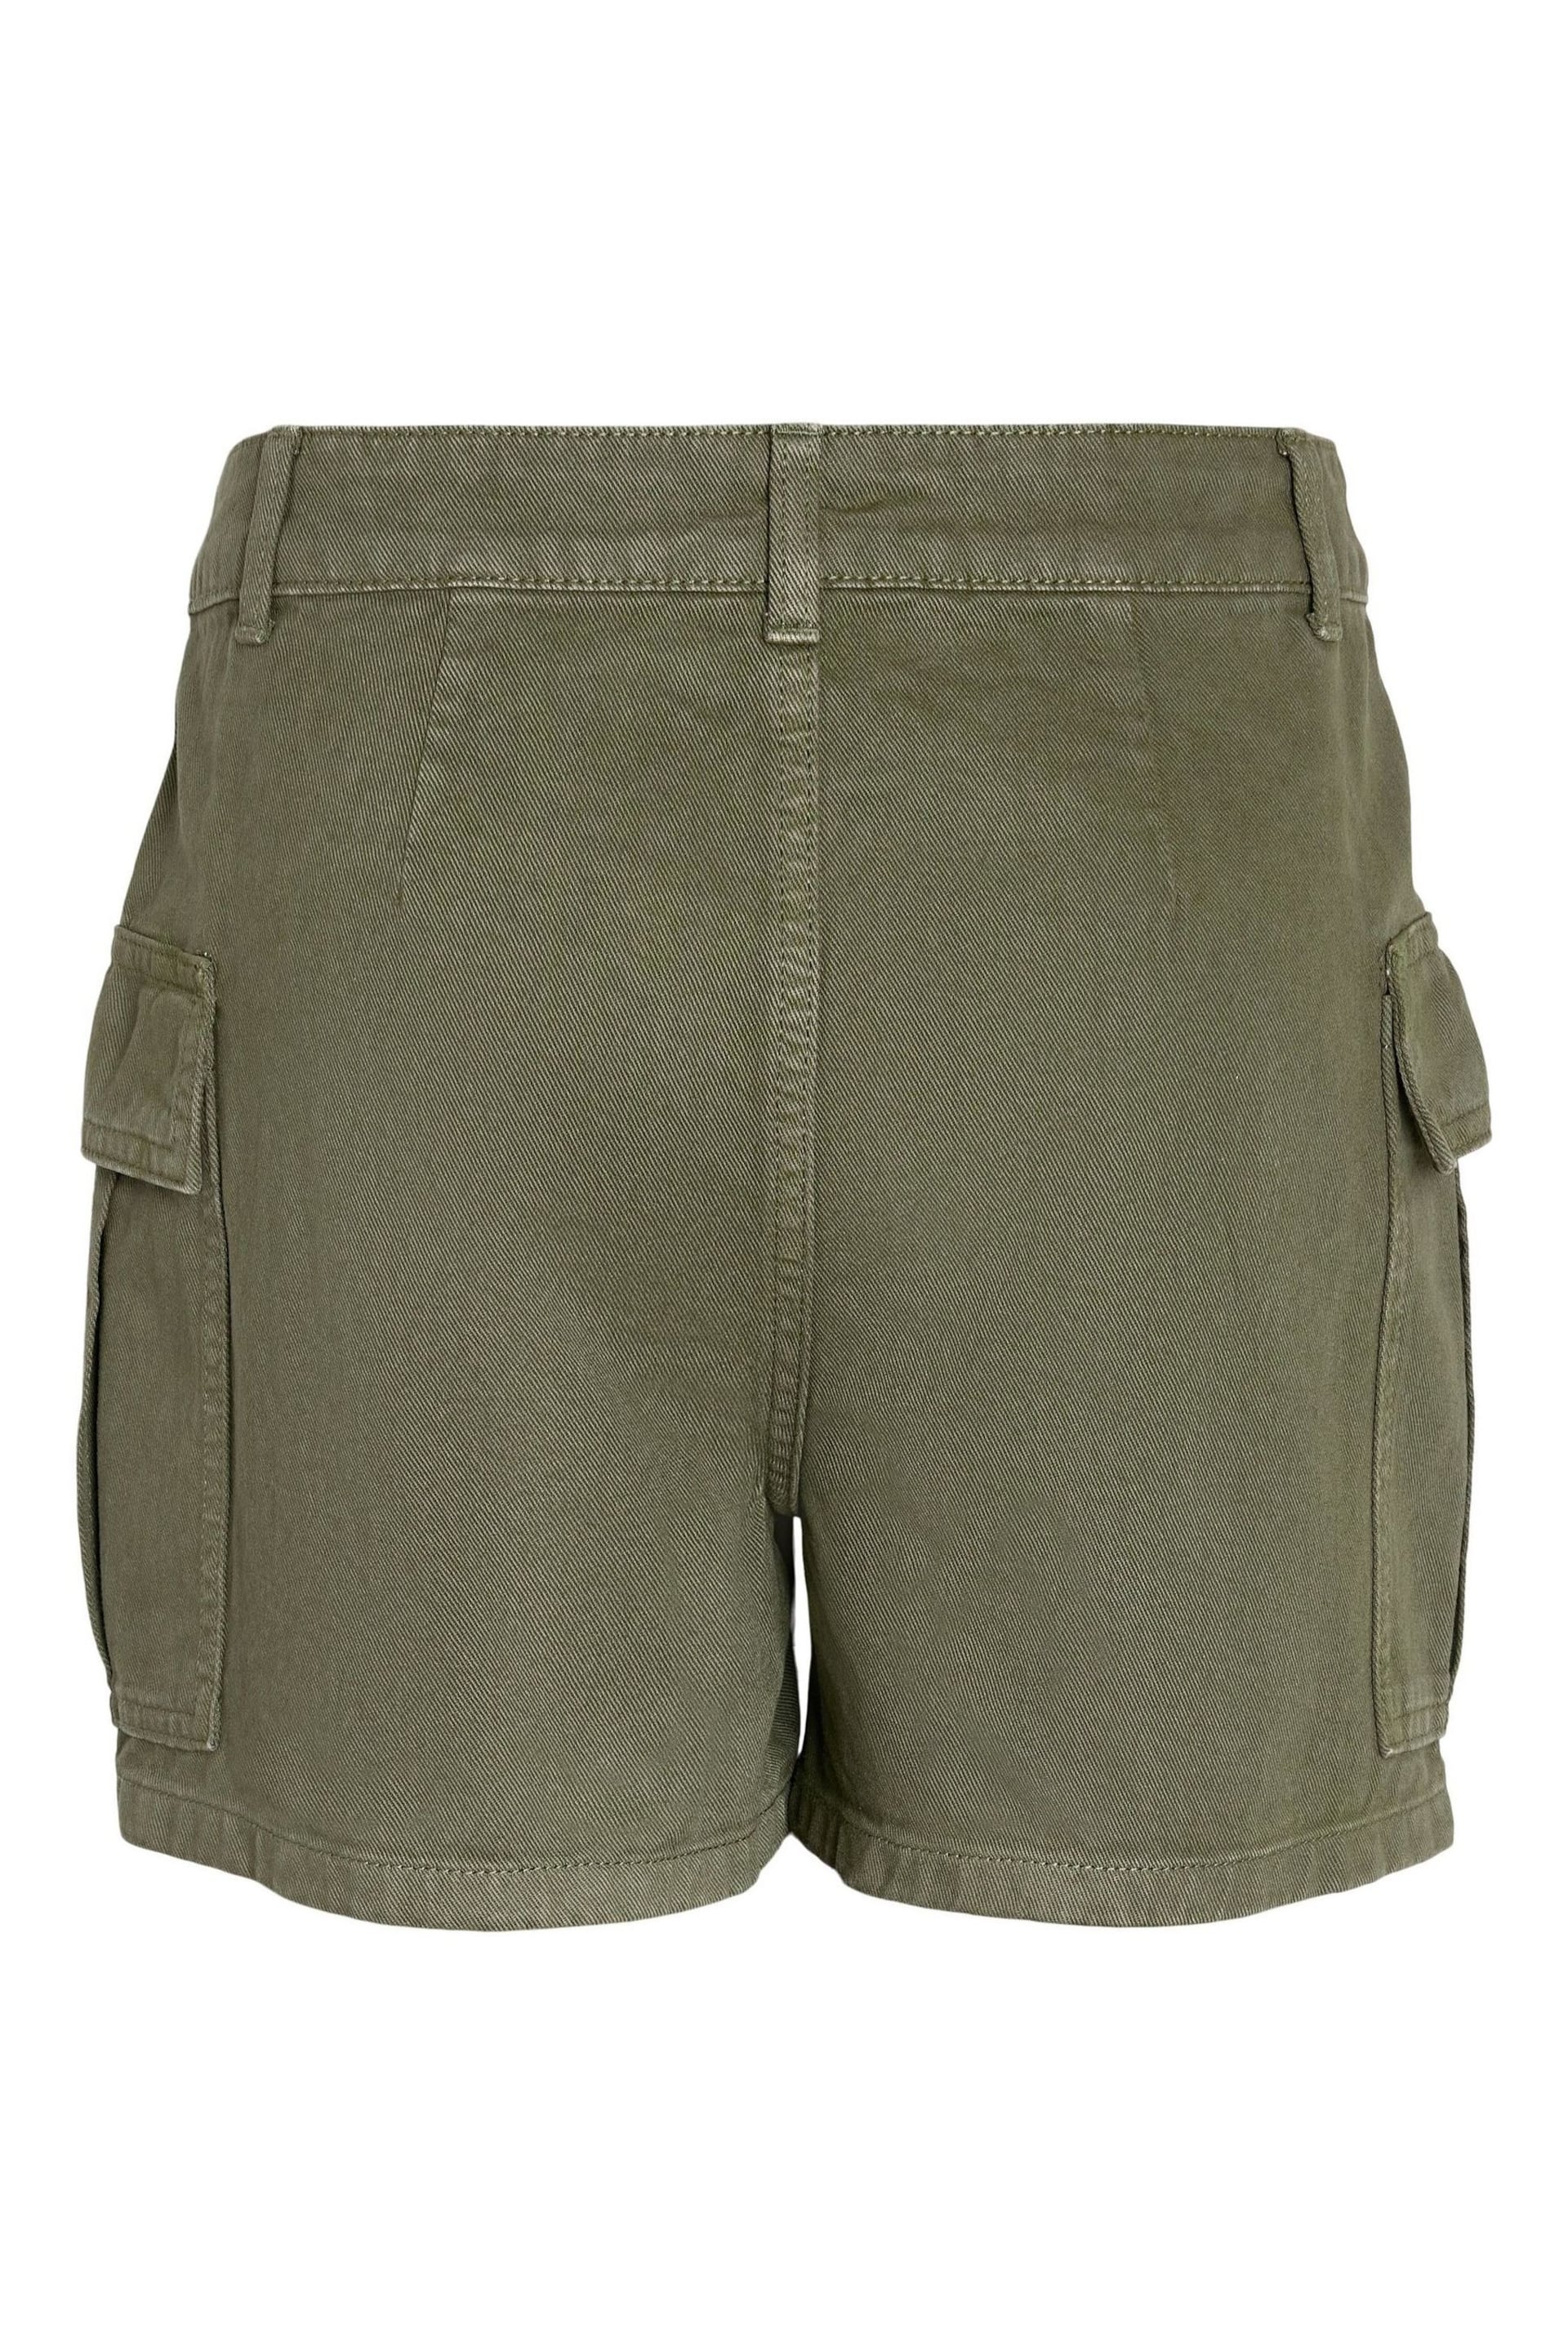 NOISY MAY Green Cargo Mom Denim Shorts - Image 2 of 2